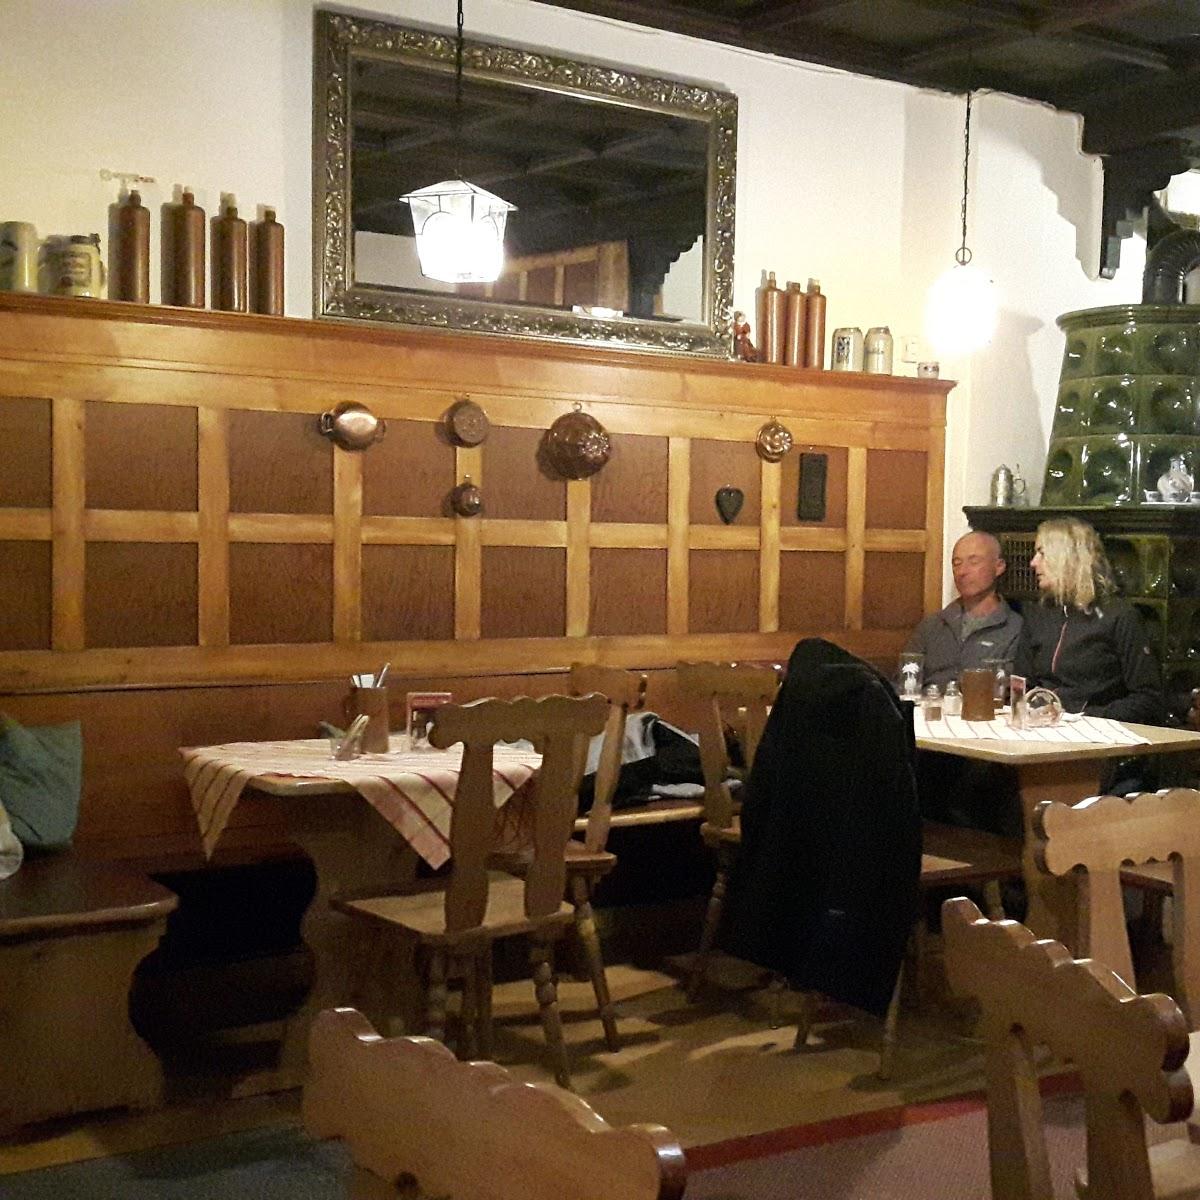 Restaurant "Gasthaus Löwen" in Isny im Allgäu